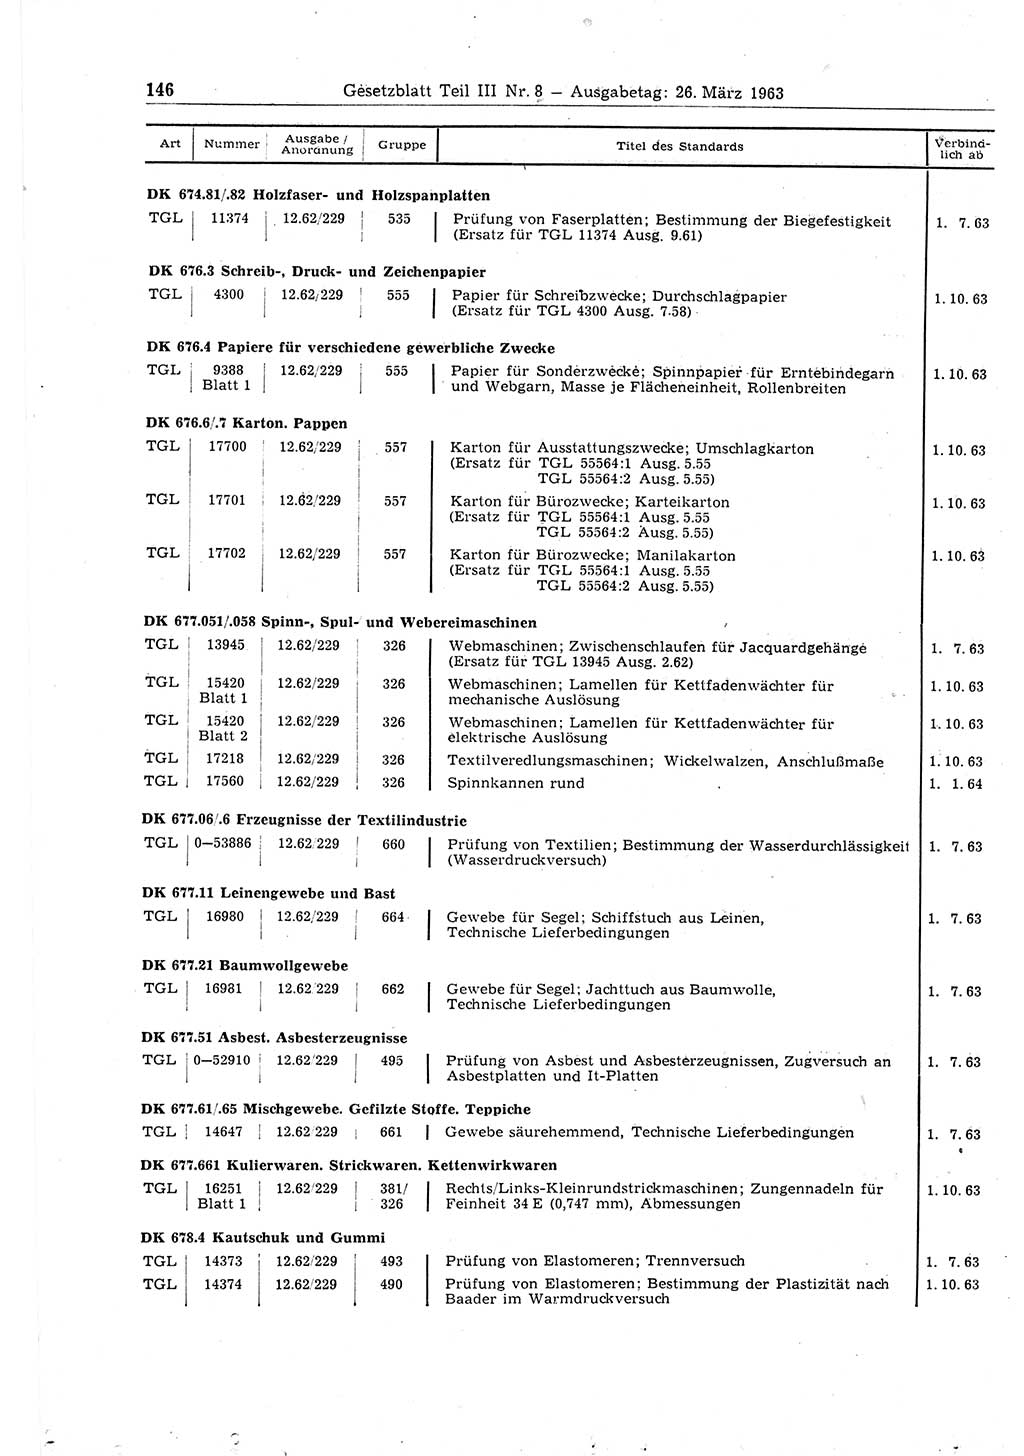 Gesetzblatt (GBl.) der Deutschen Demokratischen Republik (DDR) Teil ⅠⅠⅠ 1963, Seite 146 (GBl. DDR ⅠⅠⅠ 1963, S. 146)